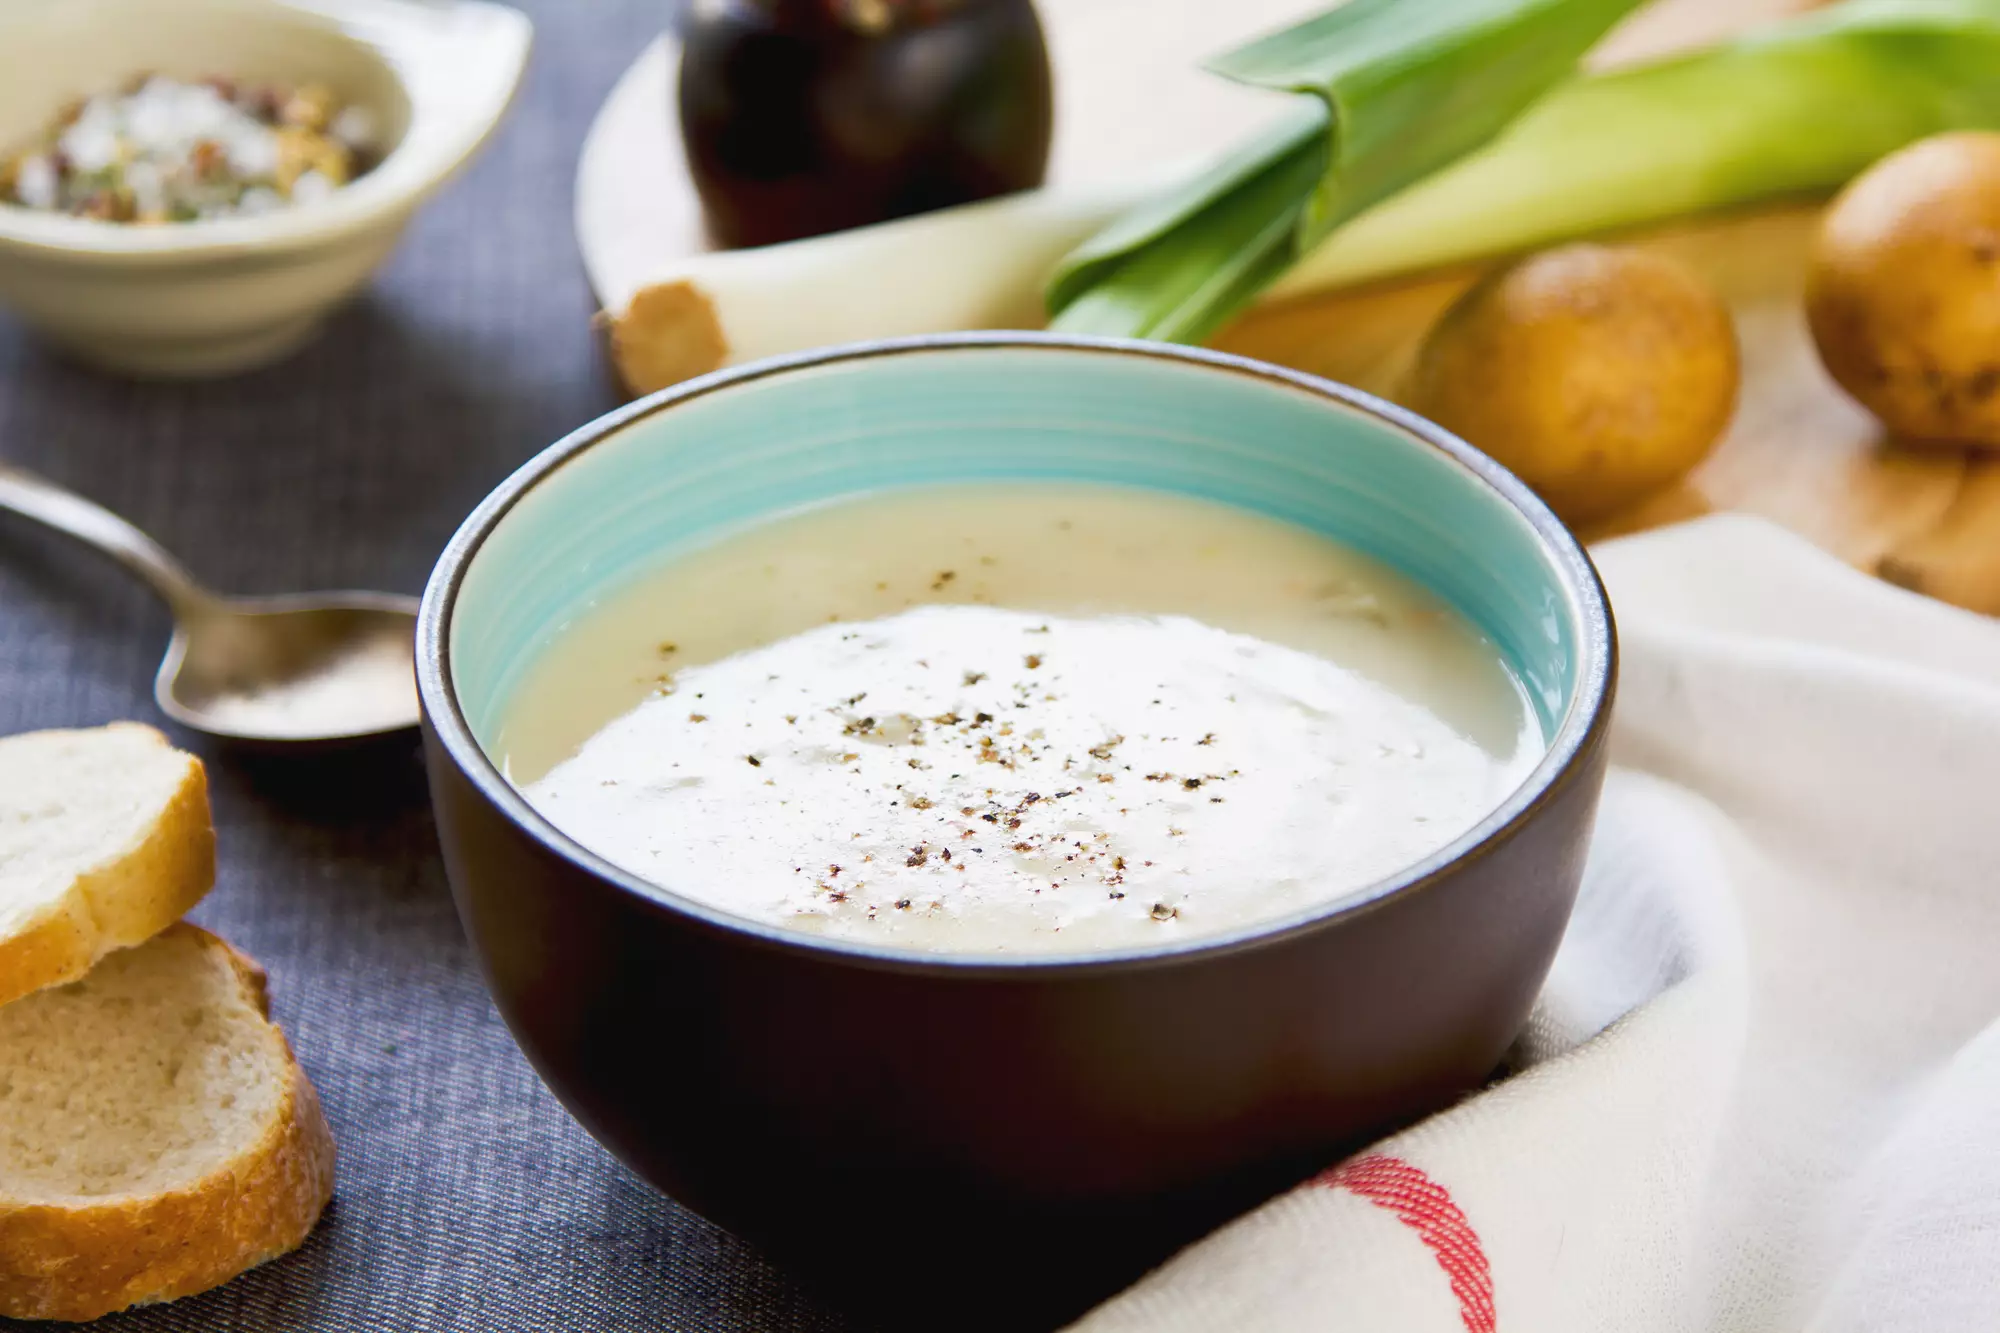 Картофельно-луковый суп